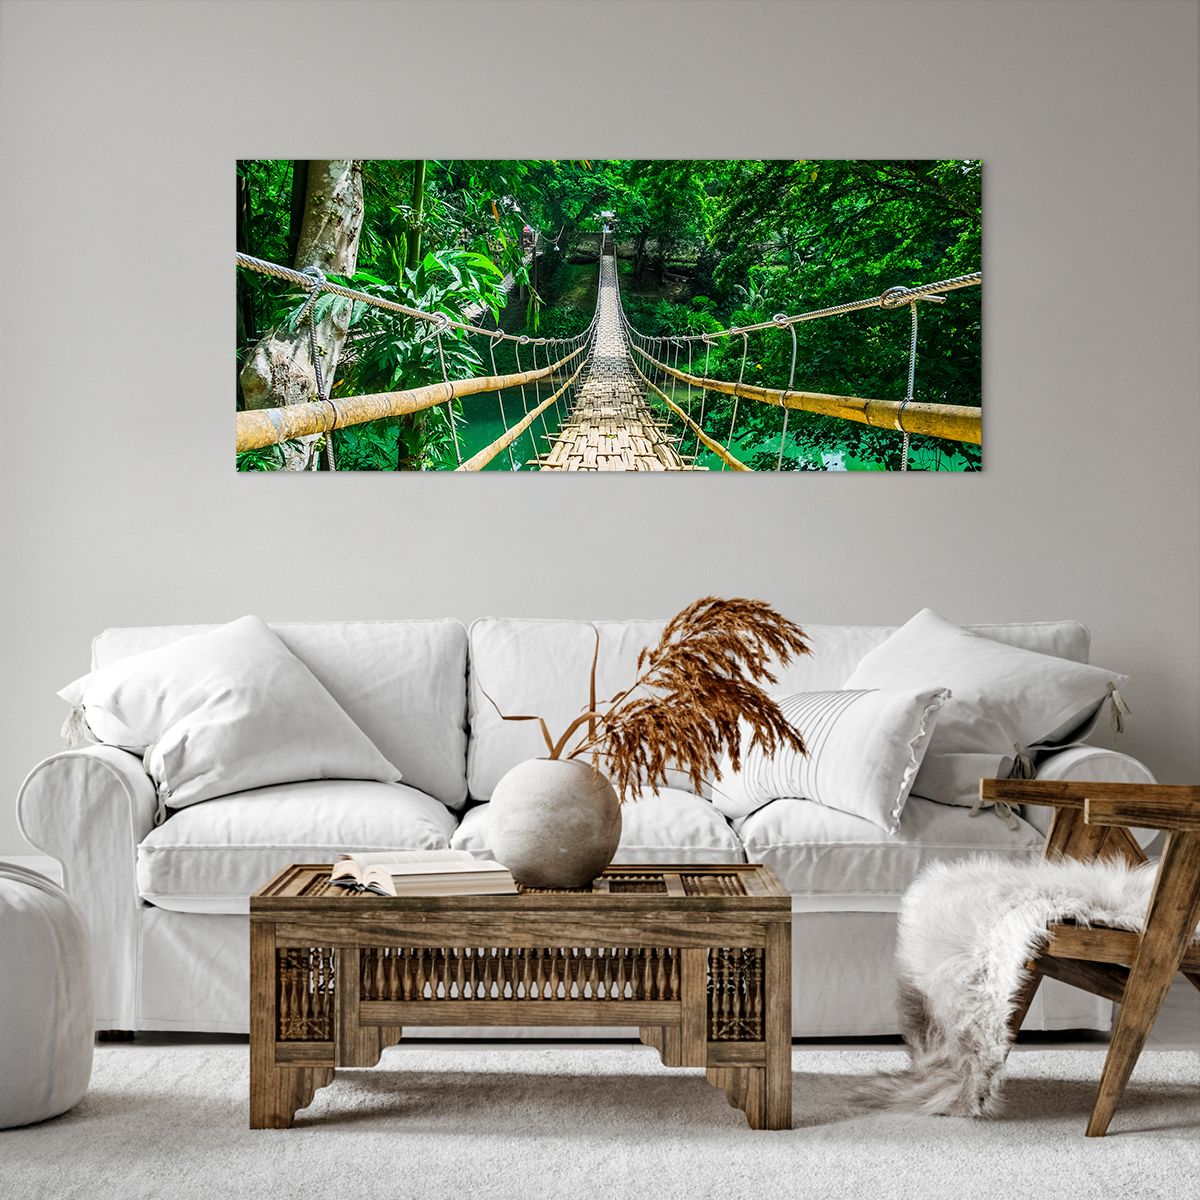 Obrazy na płótnie Krajobraz, Obrazy na płótnie Dżungla, Obrazy na płótnie Filipiny, Obrazy na płótnie Bambusowy Most, Obrazy na płótnie Podróże